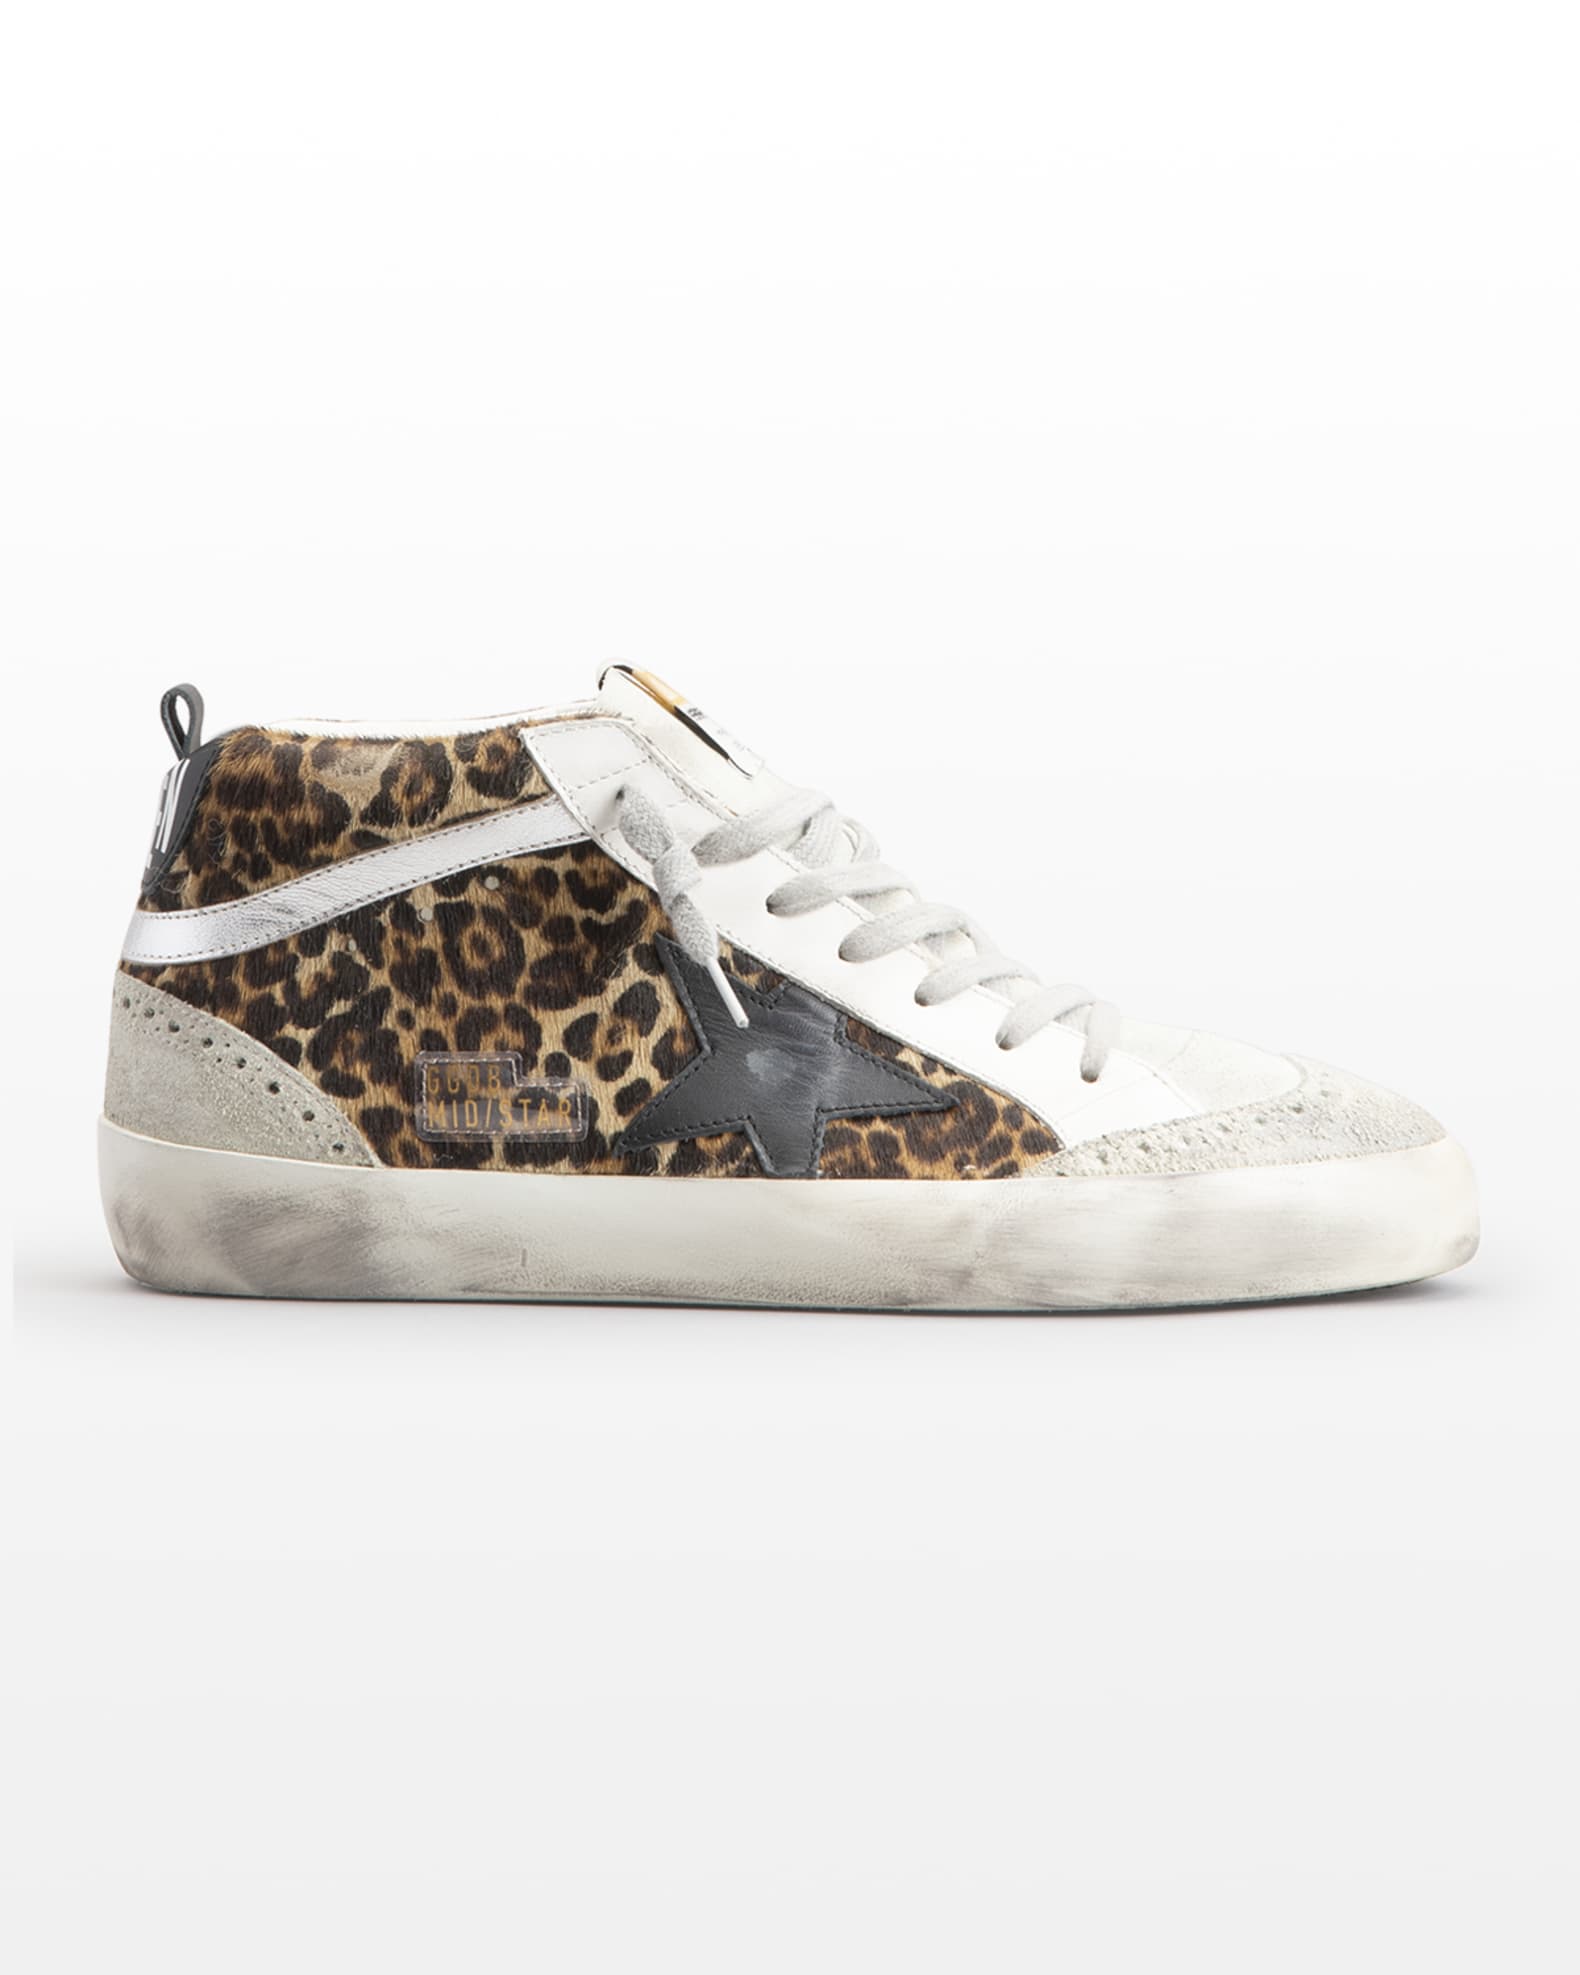 Leopard Golden Goose sneakers